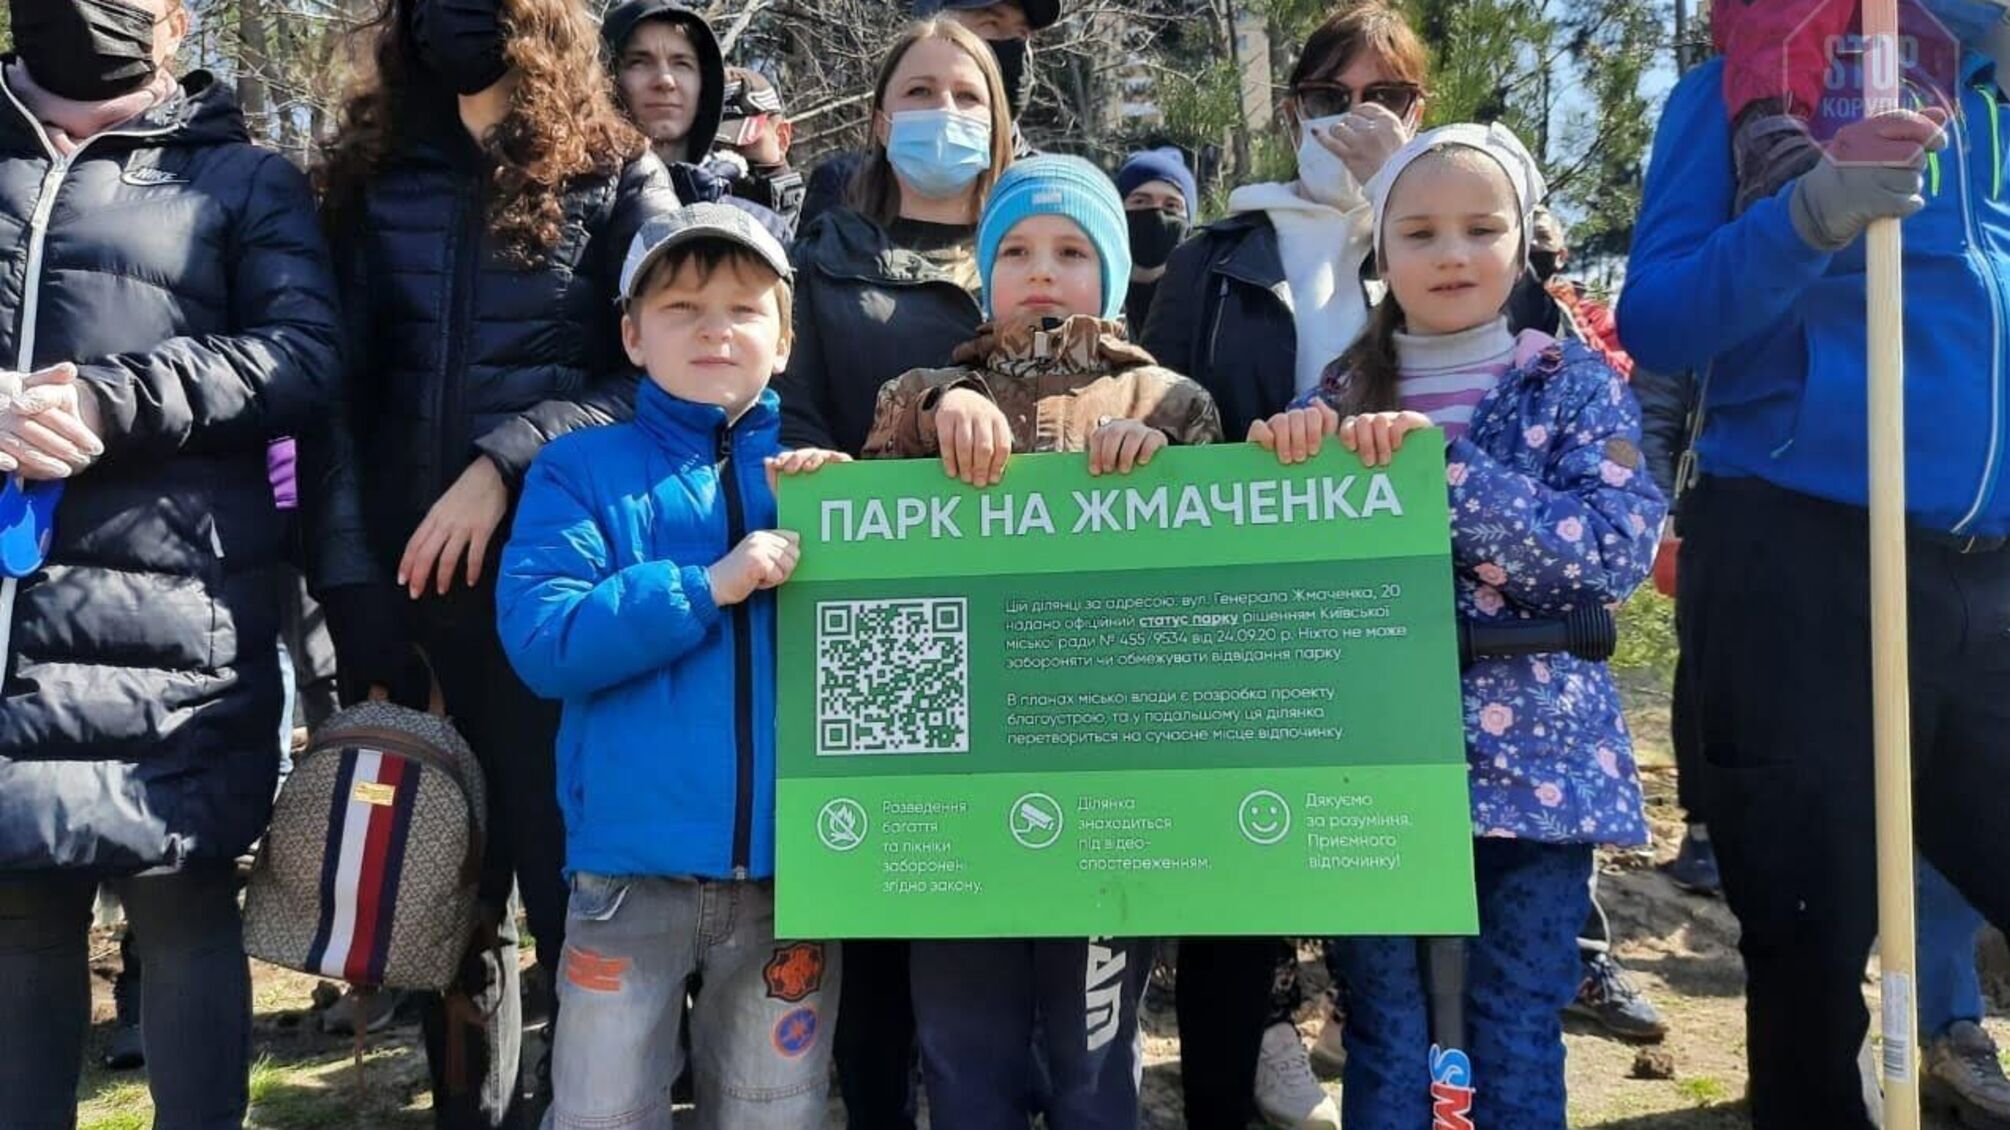 У Києві триває боротьба за парк на Жмаченка: суд переніс розгляд справи